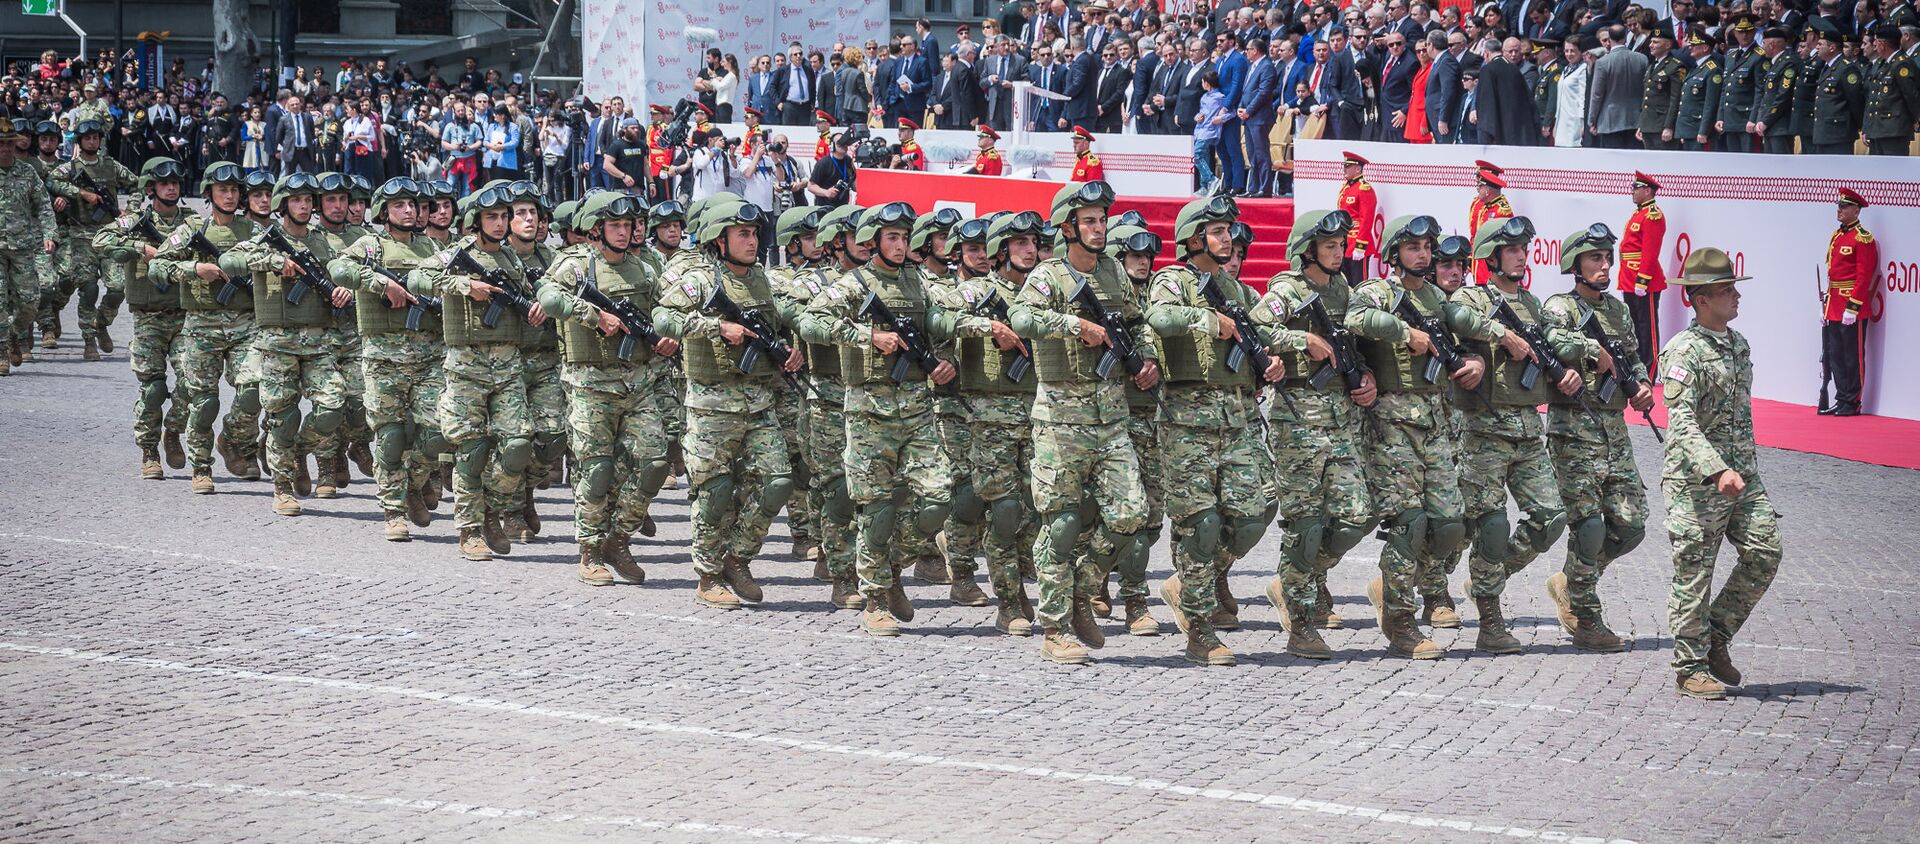 Сотни новобранцев приняли военную присягу на площади Свободы в Тбилиси в День независимости Грузии - Sputnik Грузия, 1920, 13.06.2020